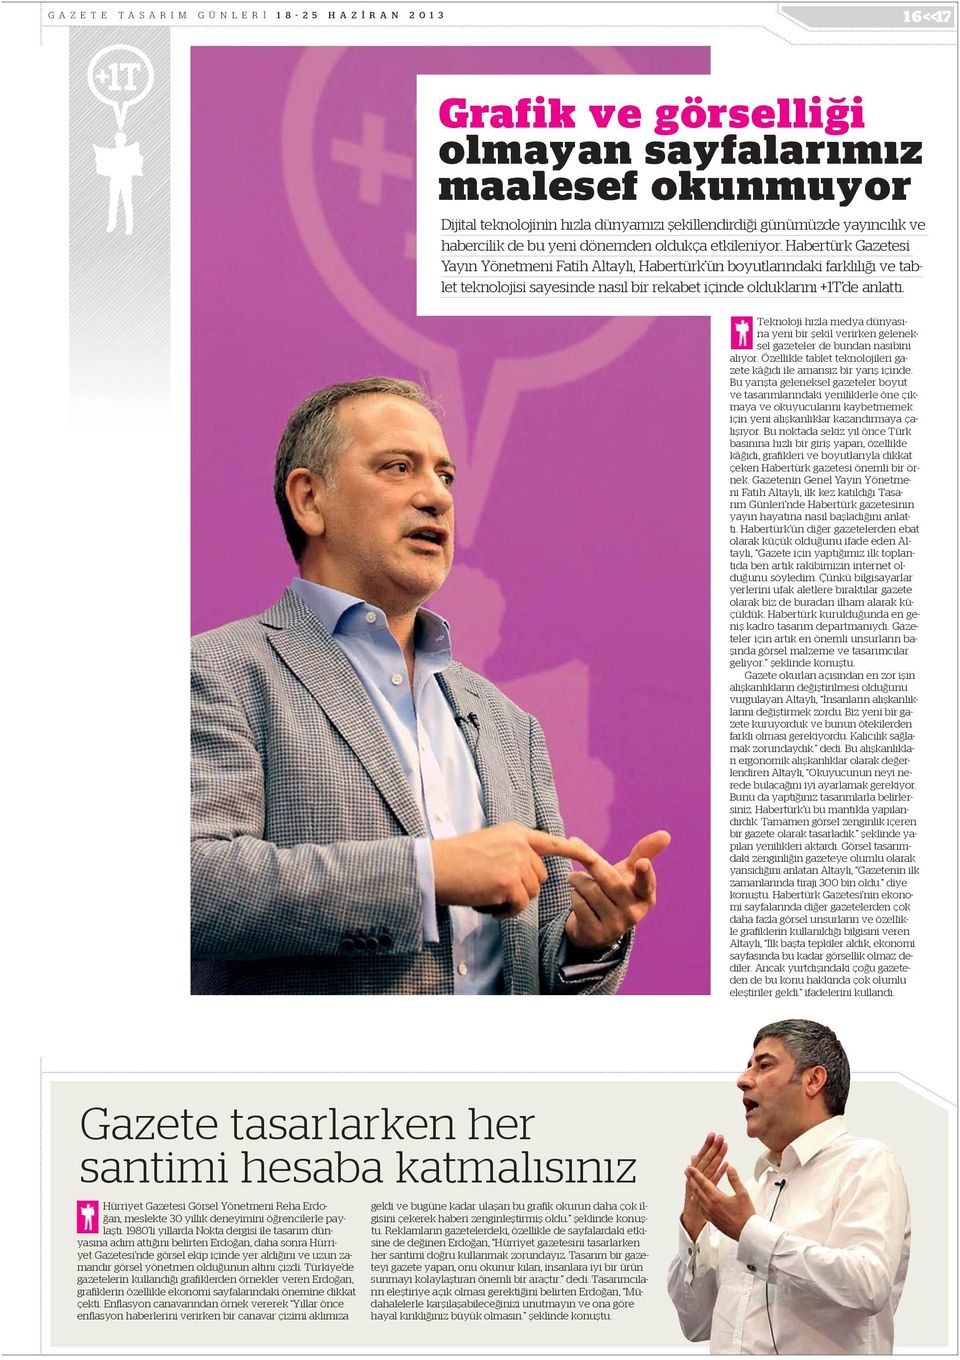 Habertürk Gazetesi Yay n Yönetmeni Fatih Altayl, Habertürk ün boyutlar ndaki farkl l ve tablet teknolojisi sayesinde nas l bir rekabet içinde olduklar n +1T de anlatt.